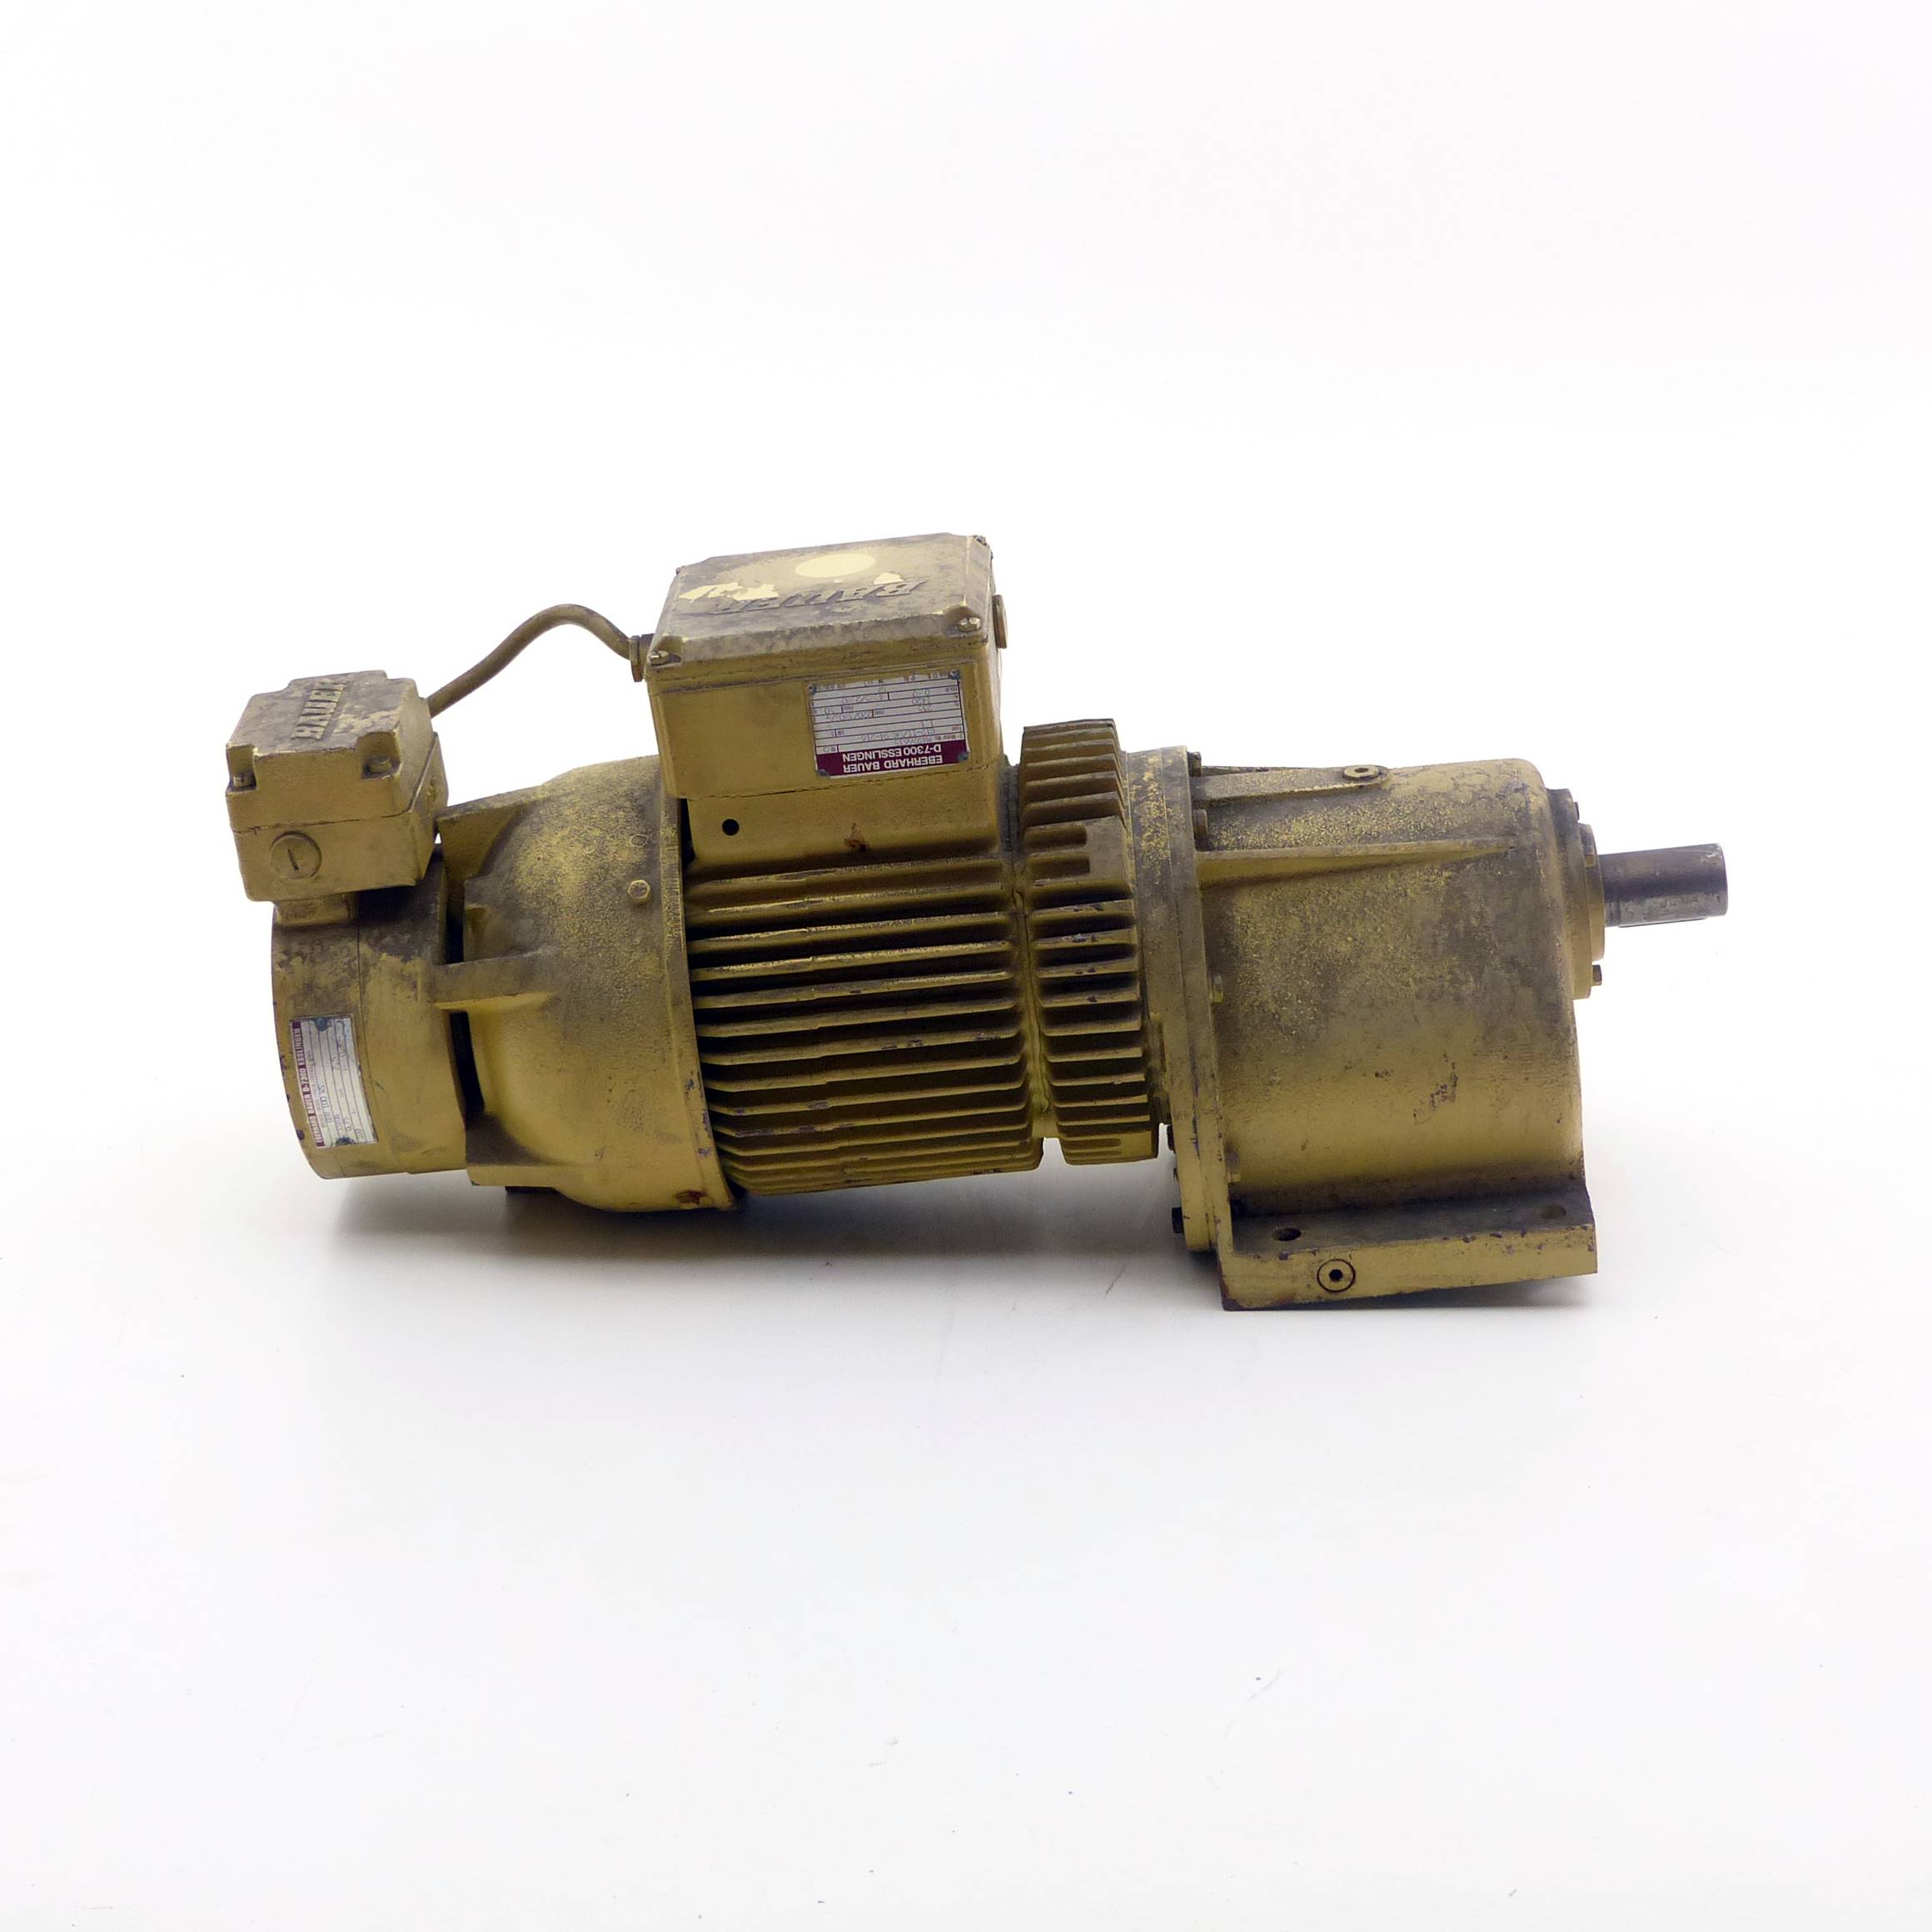 Getriebemotor, Bauer Typ: G23-21/DK84-200 L-MG - Pelle Vakuumverpackung